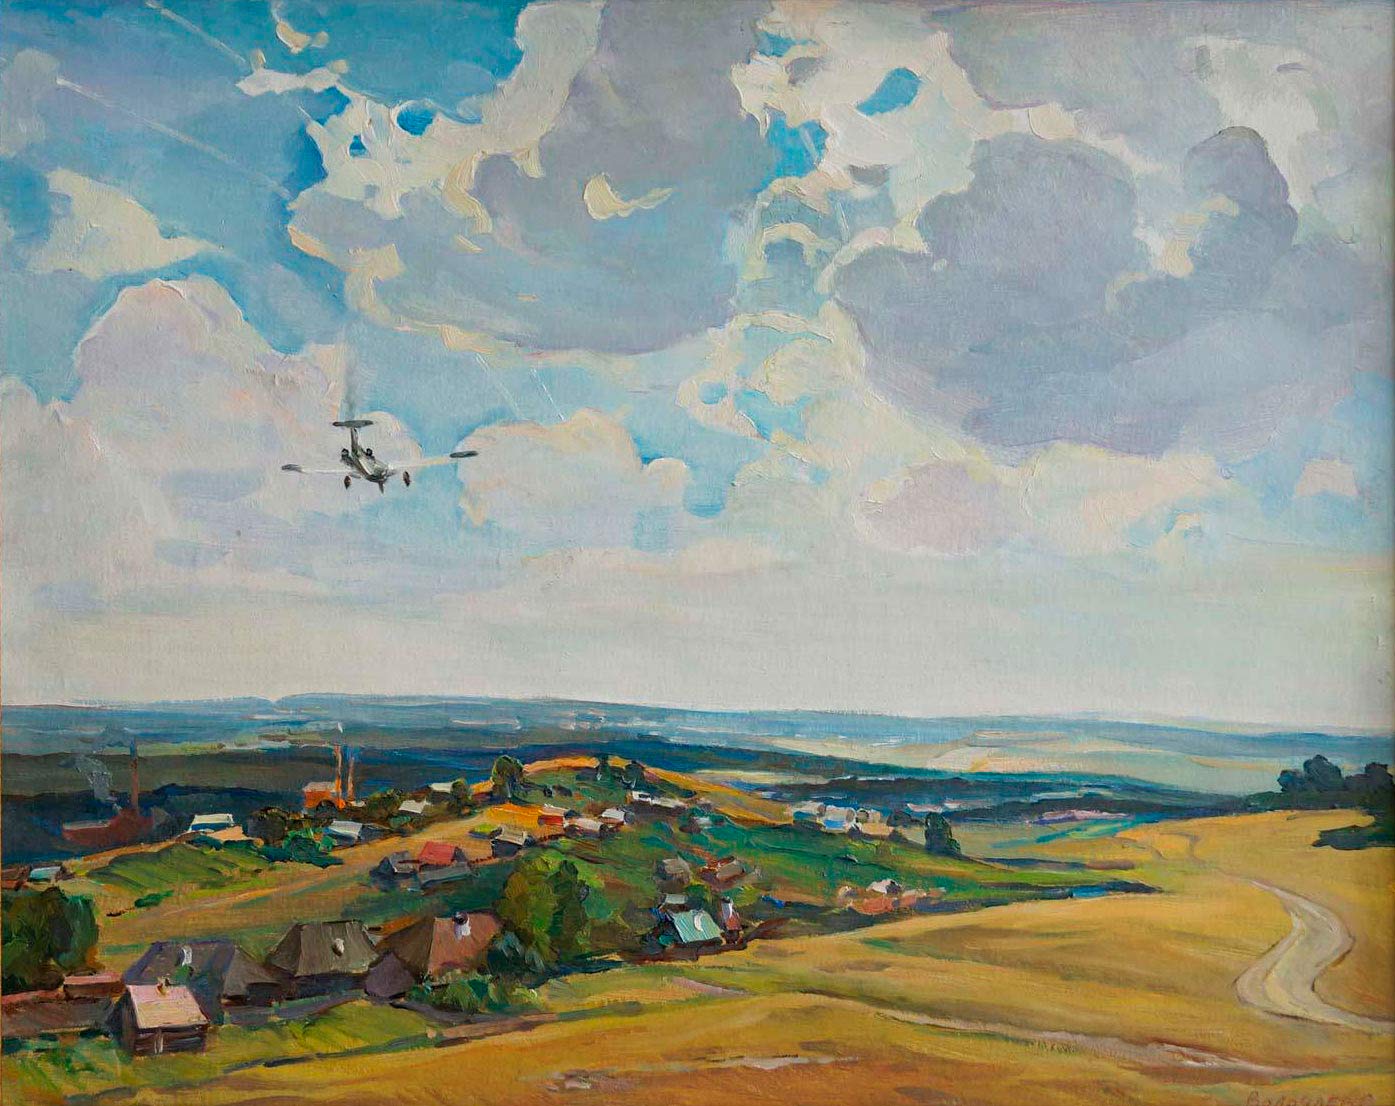 Above Isetsk - 1, Sergei Volochaev, Buy the painting Oil